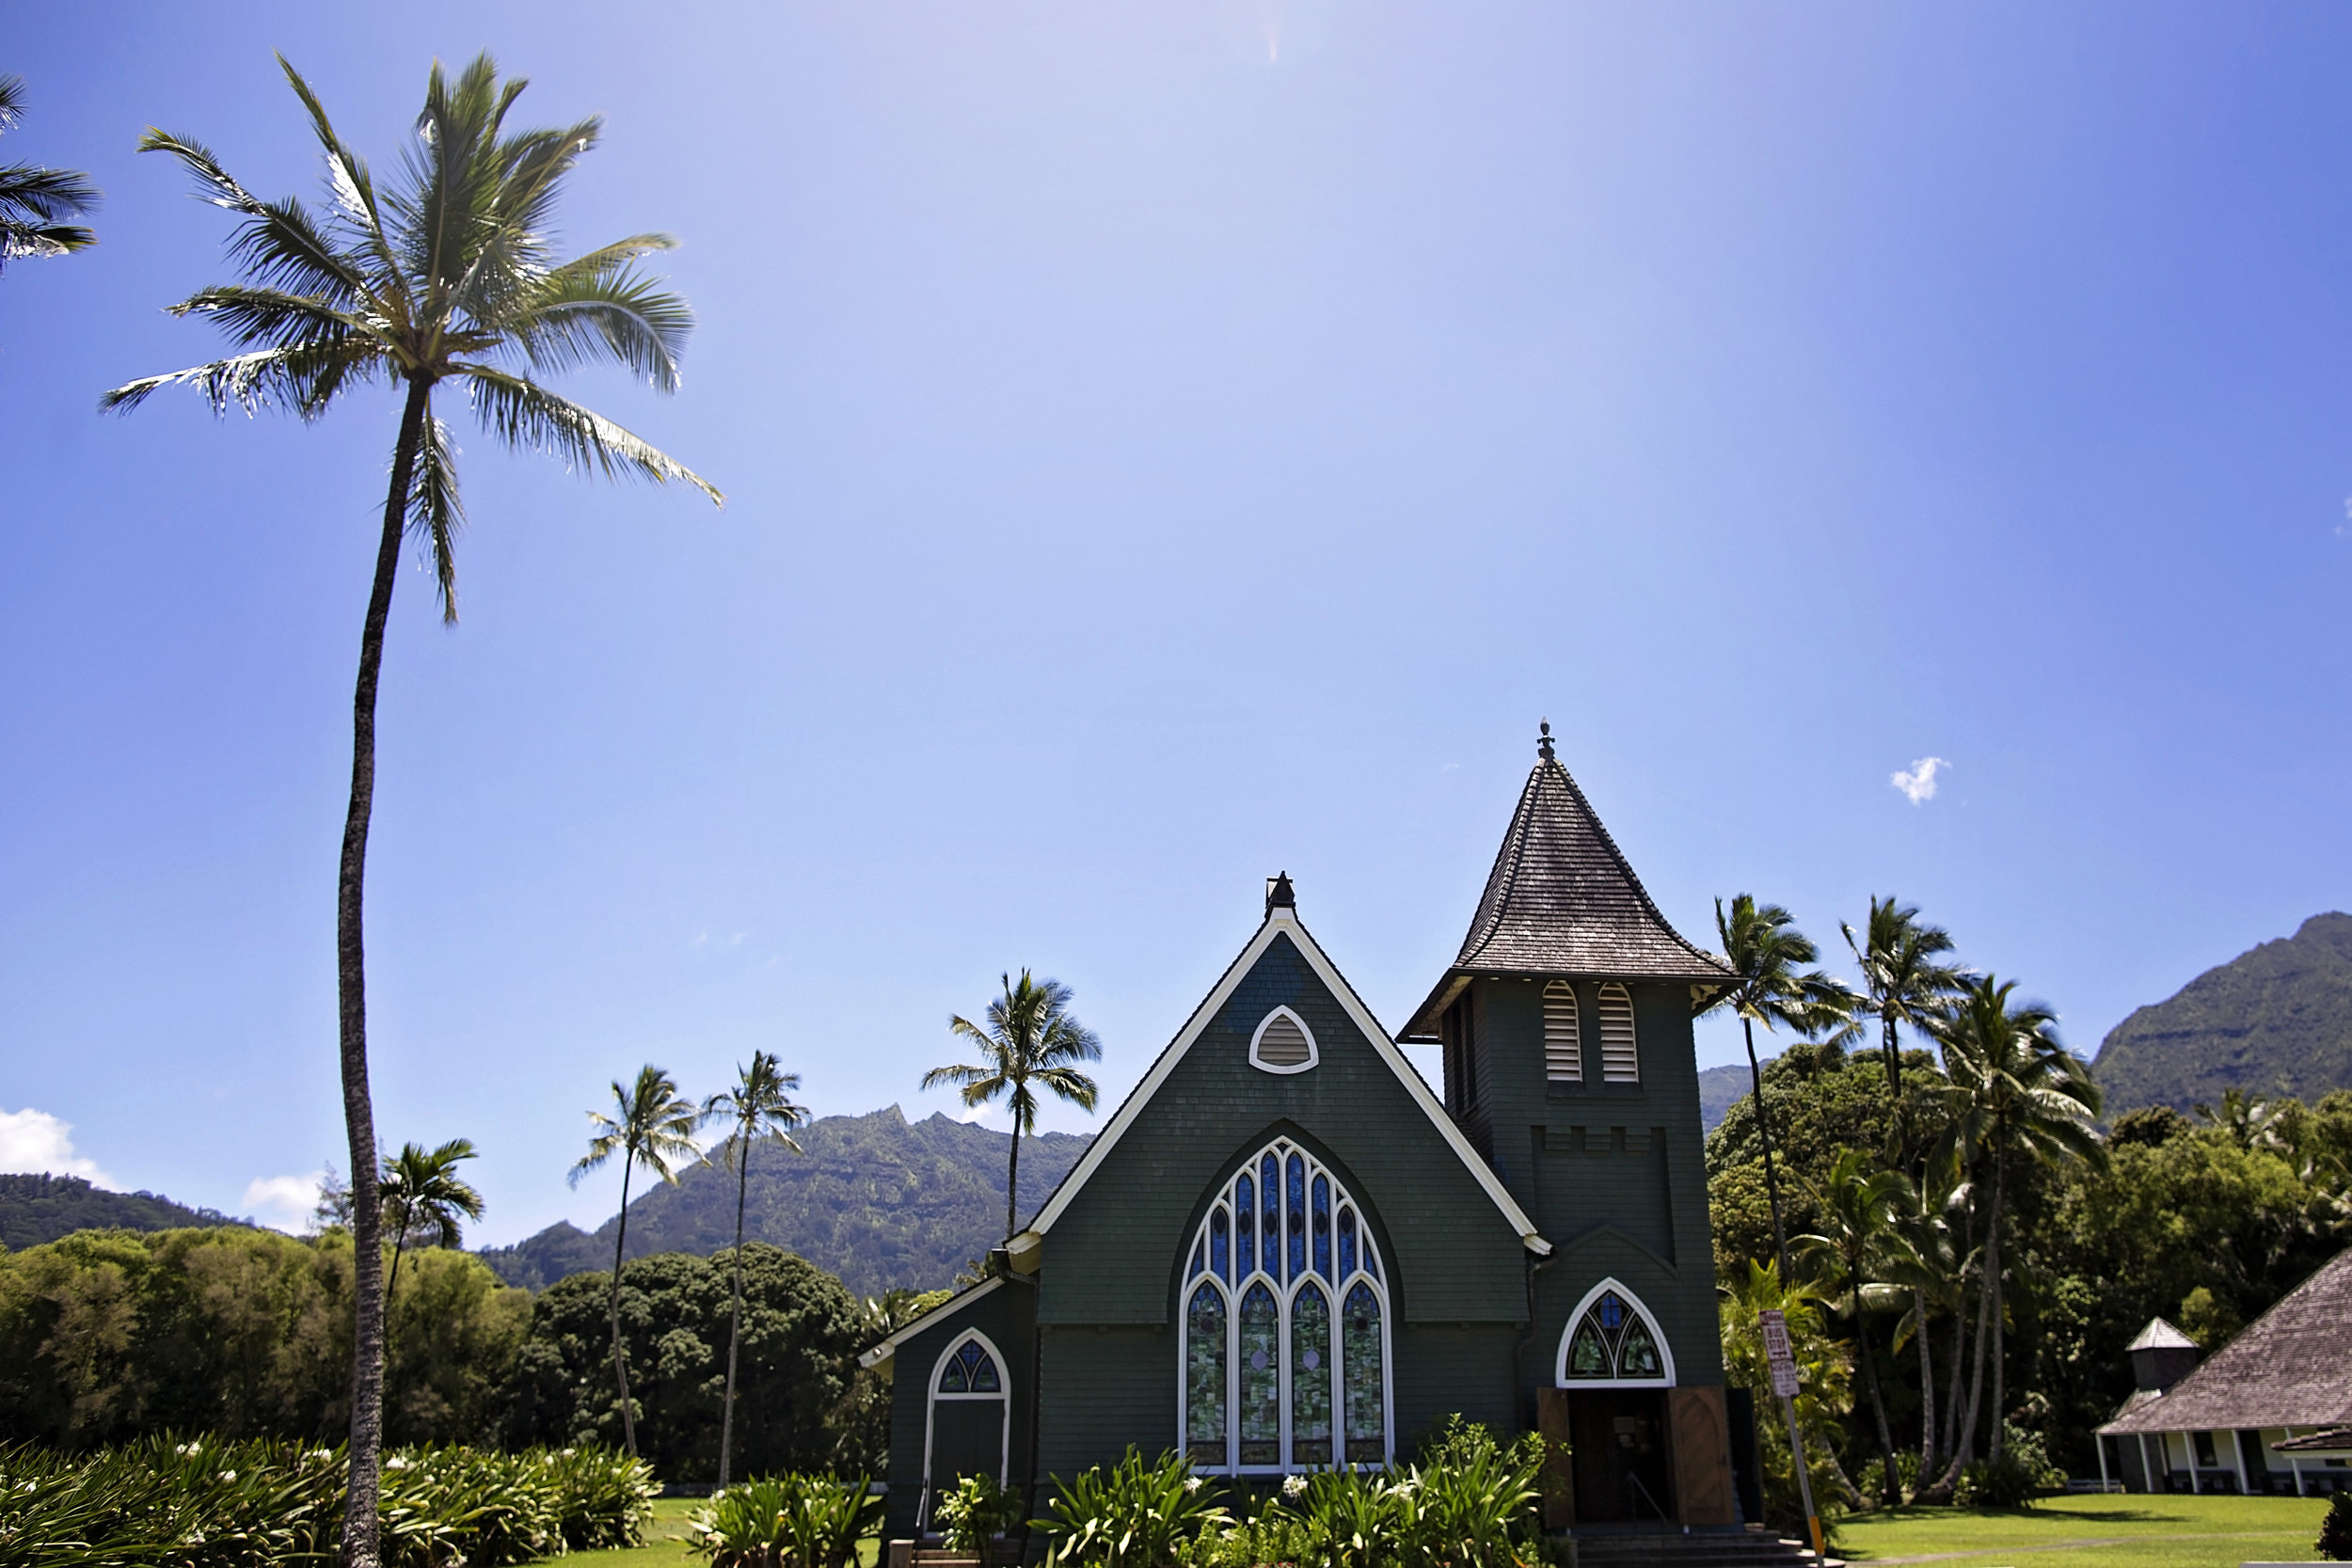 The prettiest little church in Kauai